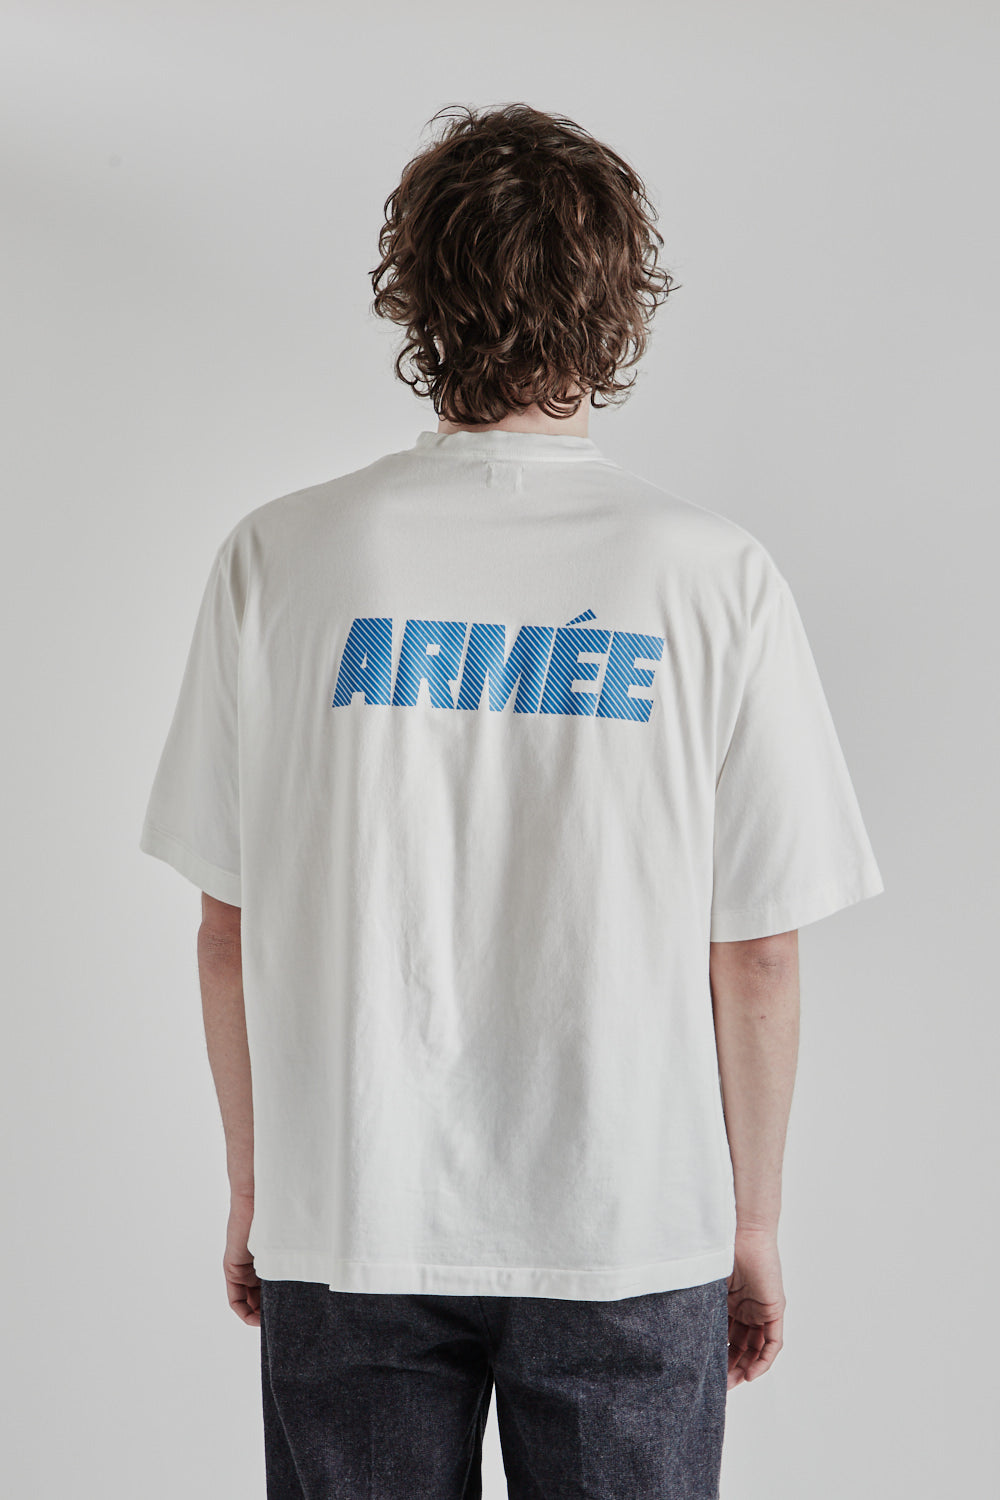 ARMÉE Print Wide Tee - White/Blue